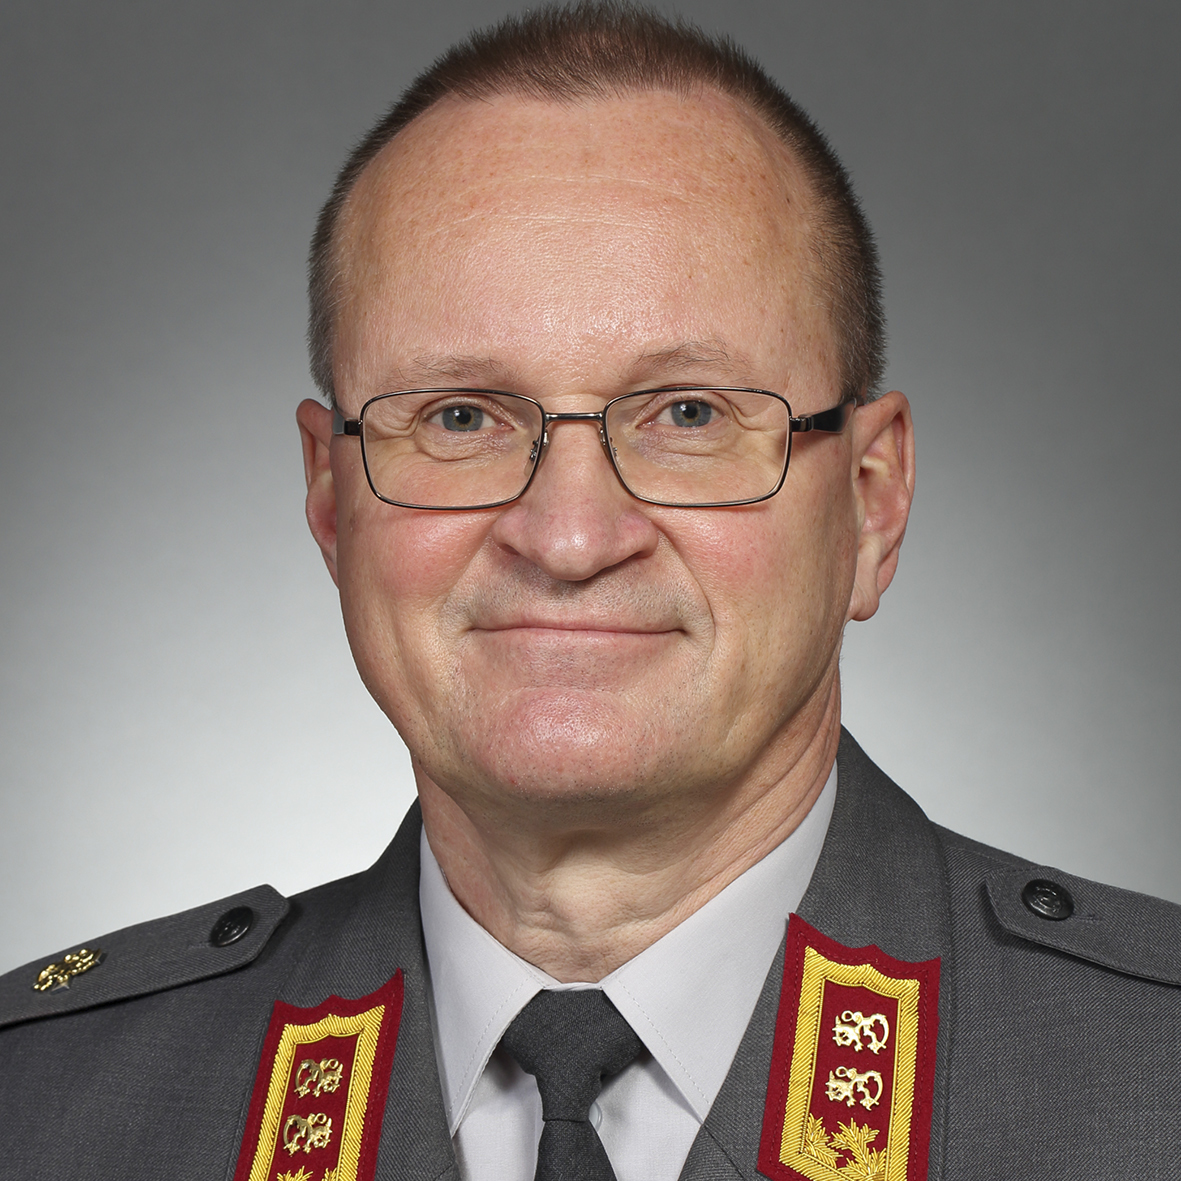 Major General Mikko Heiskanen